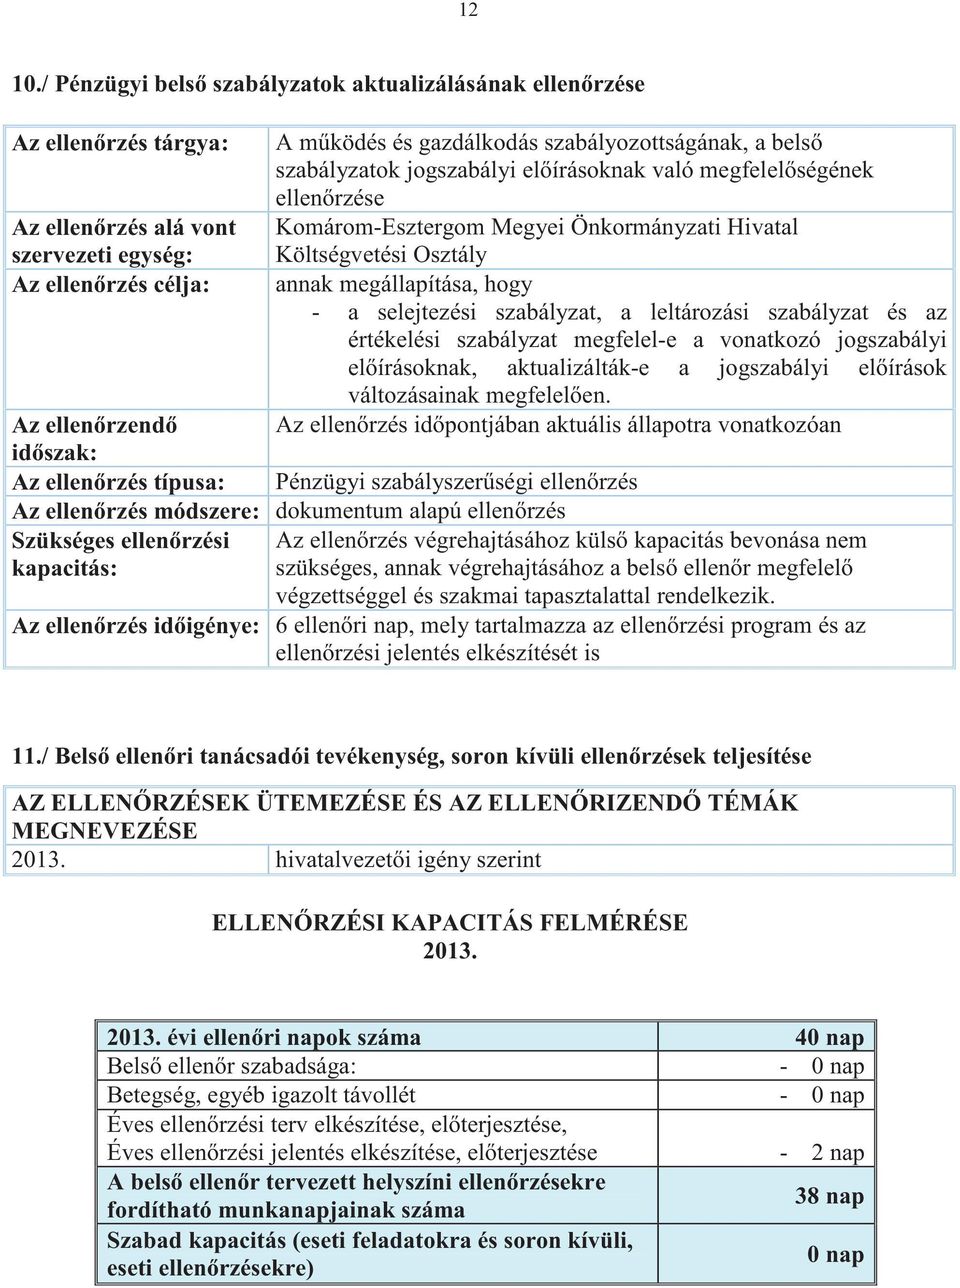 szabályzatok jogszabályi elírásoknak való megfelelségének ellenrzése Komárom-Esztergom Megyei Önkormányzati Hivatal Költségvetési Osztály annak megállapítása, hogy - a selejtezési szabályzat, a